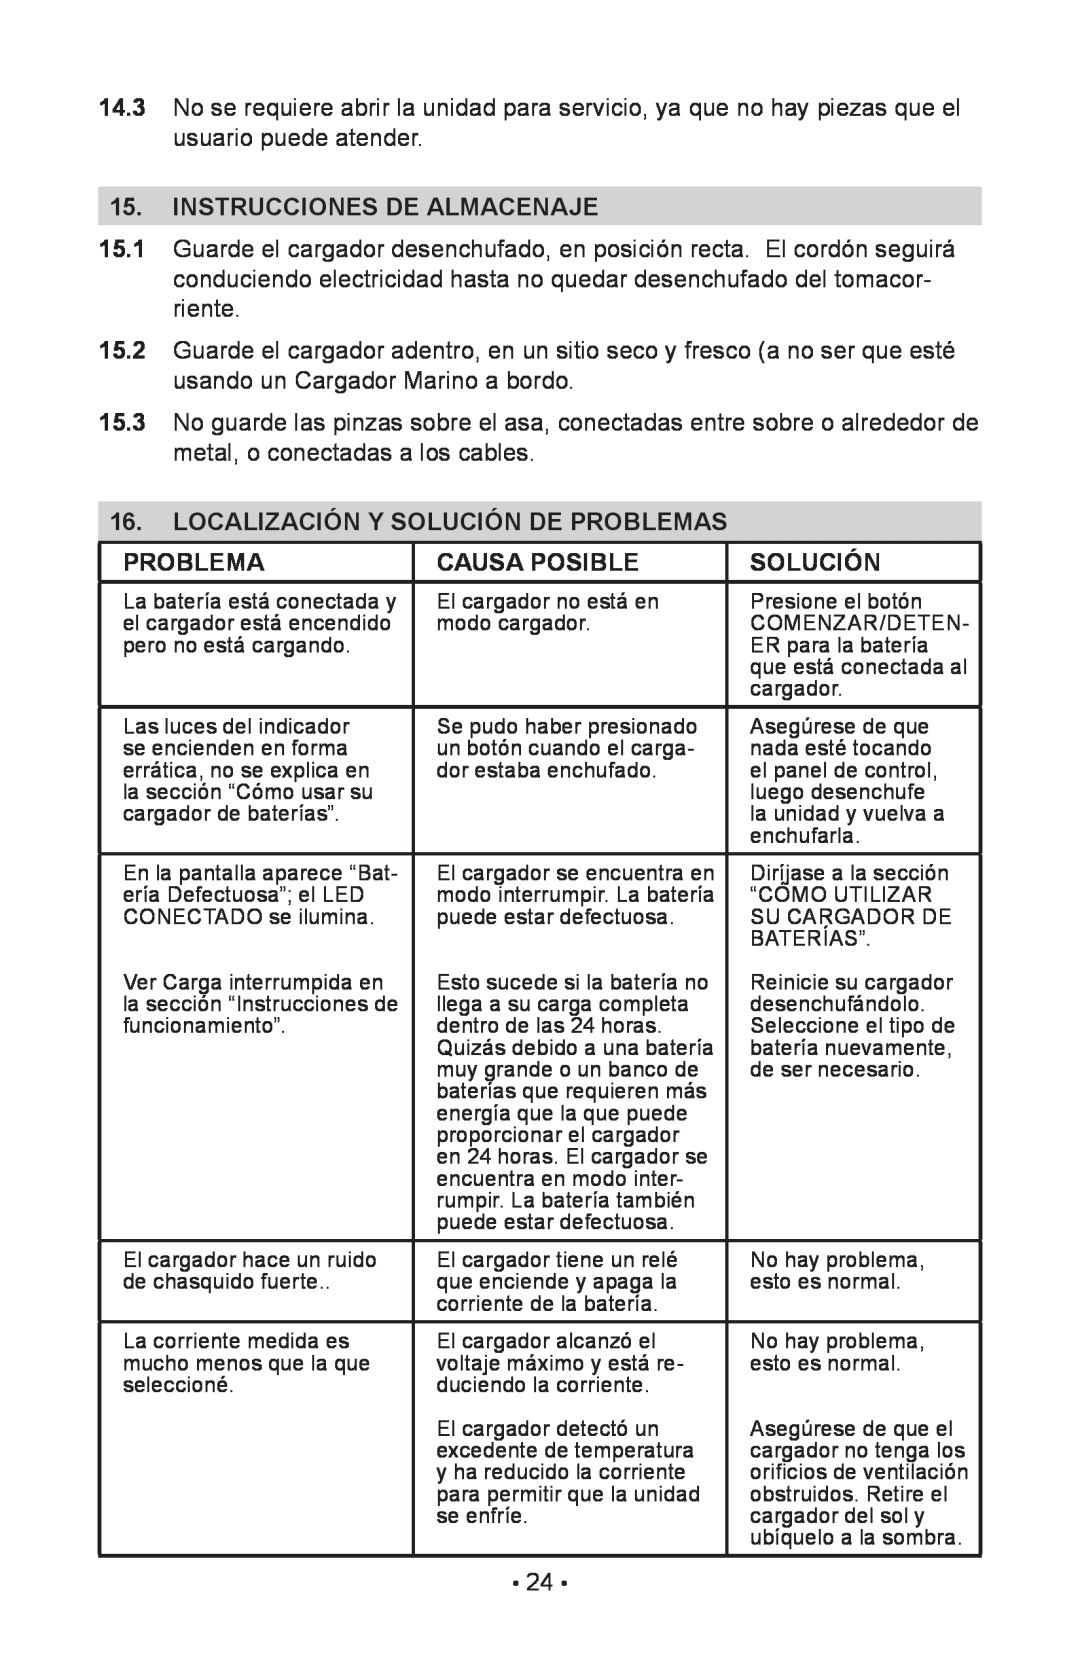 Schumacher 94085894, NIN-812A owner manual Instrucciones De Almacenaje, Localización Y Solución De Problemas, Causa Posible 